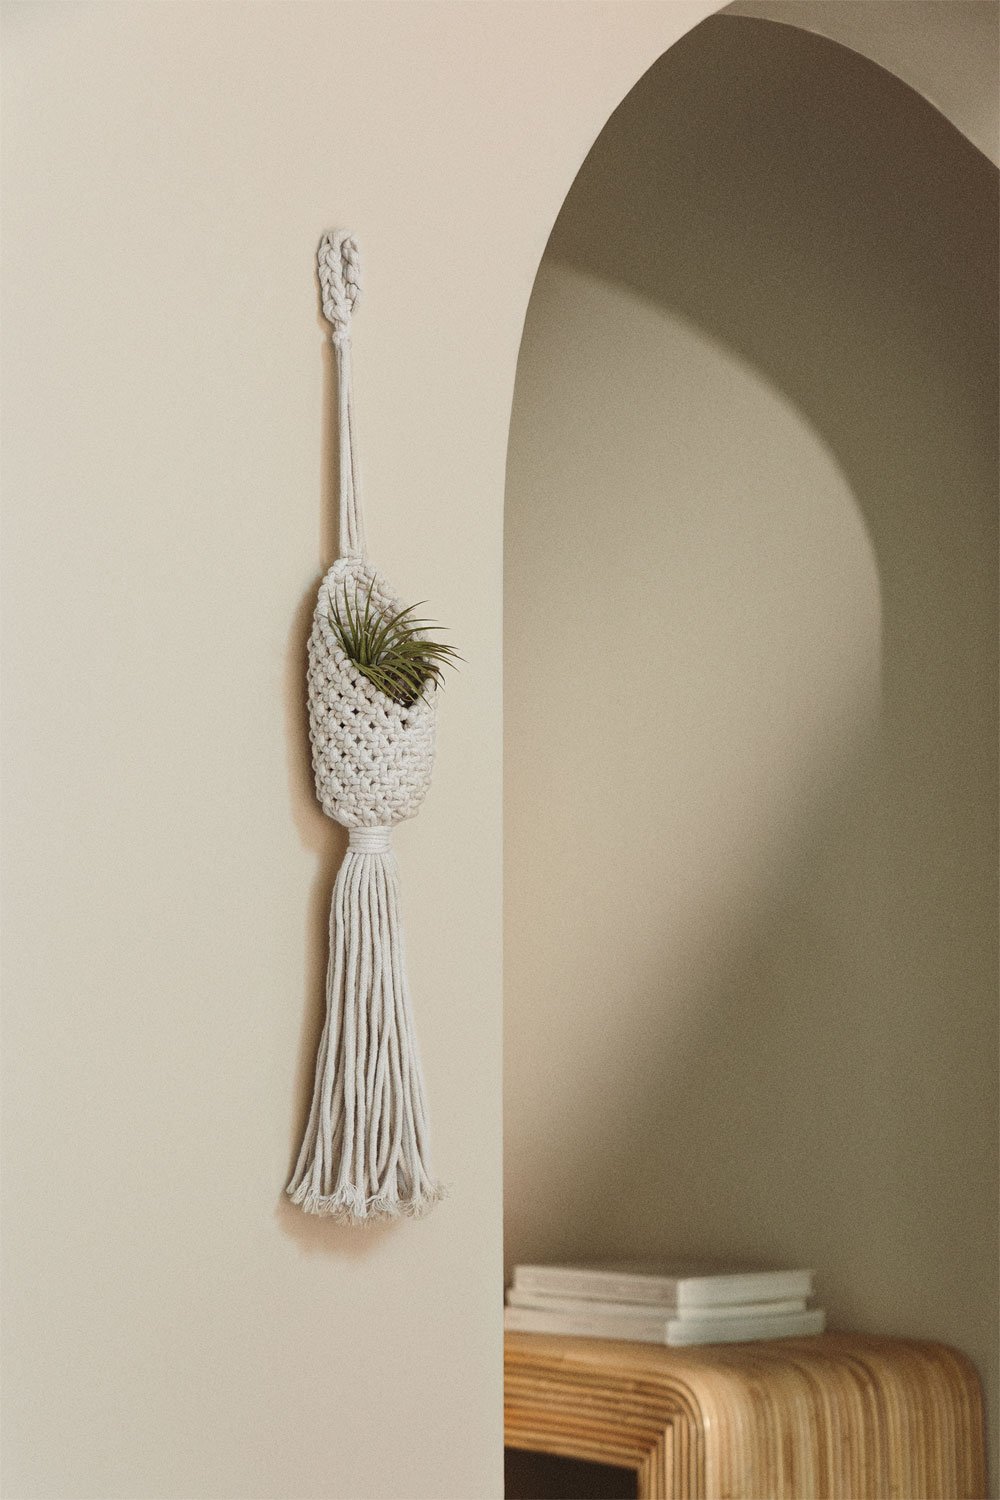 Macrame hangende plantenbak Anibal, galerij beeld 1